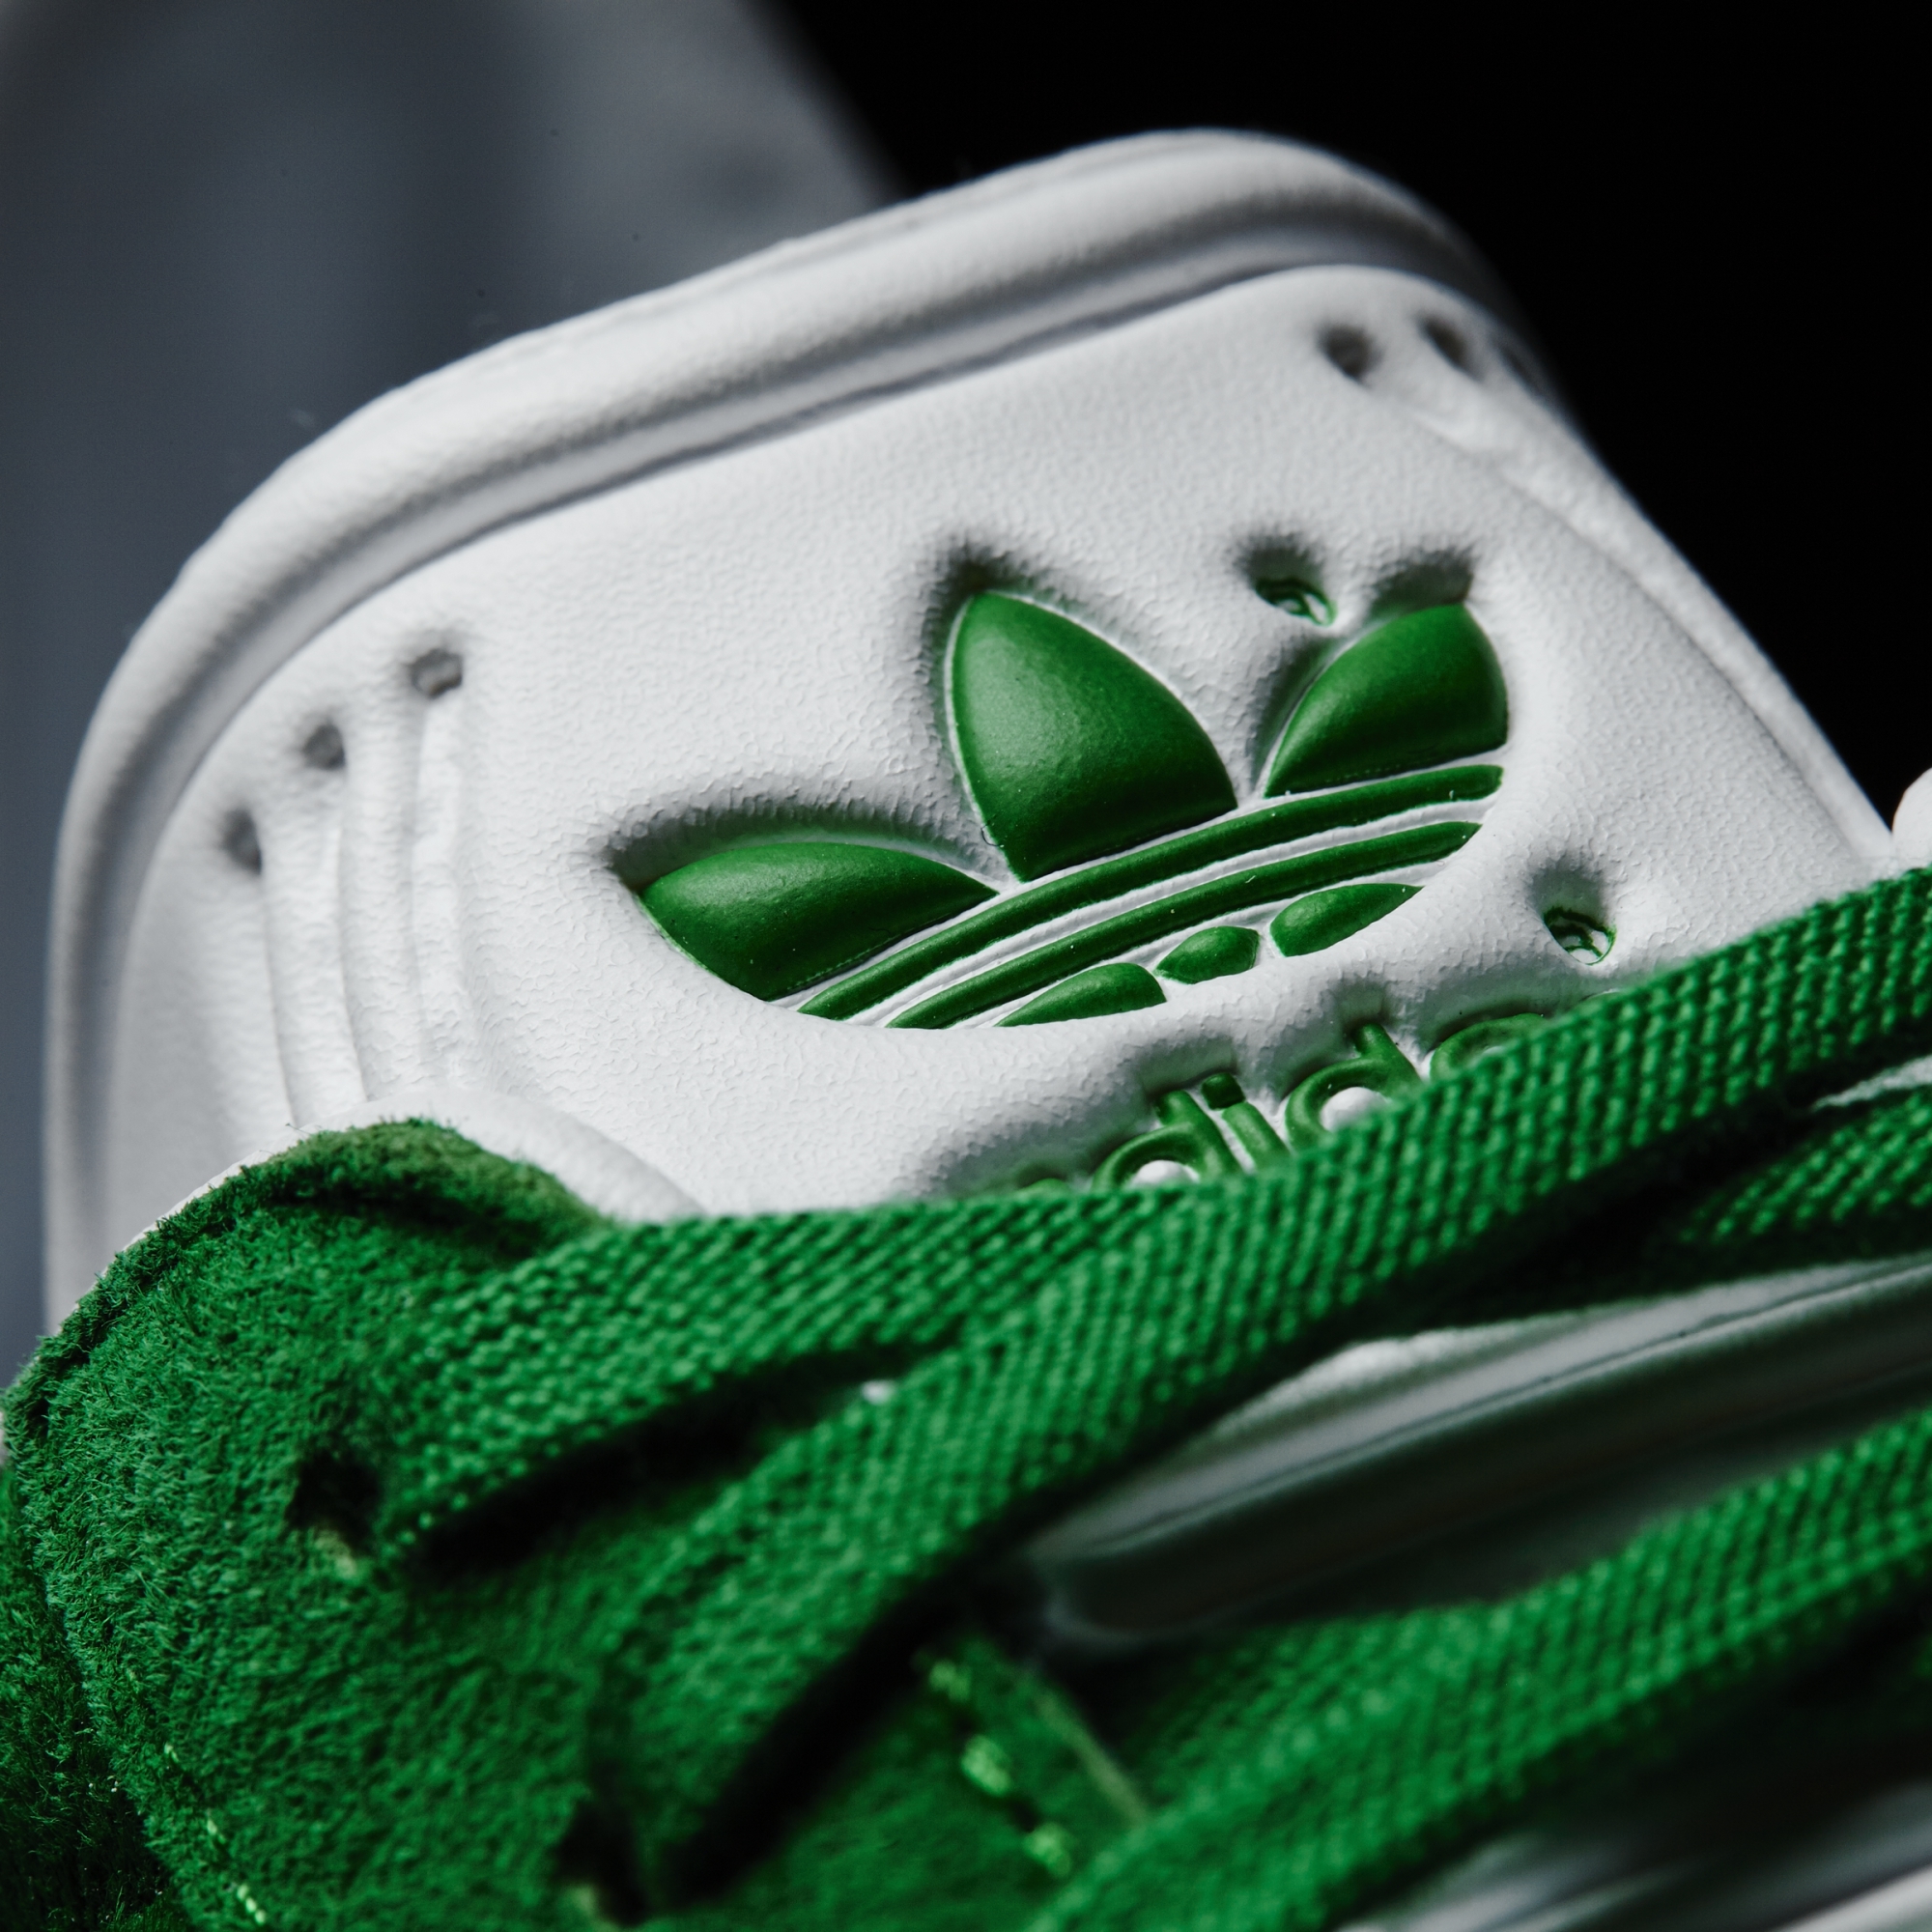 adidas Gazelle verde zapatillas adidas hombre